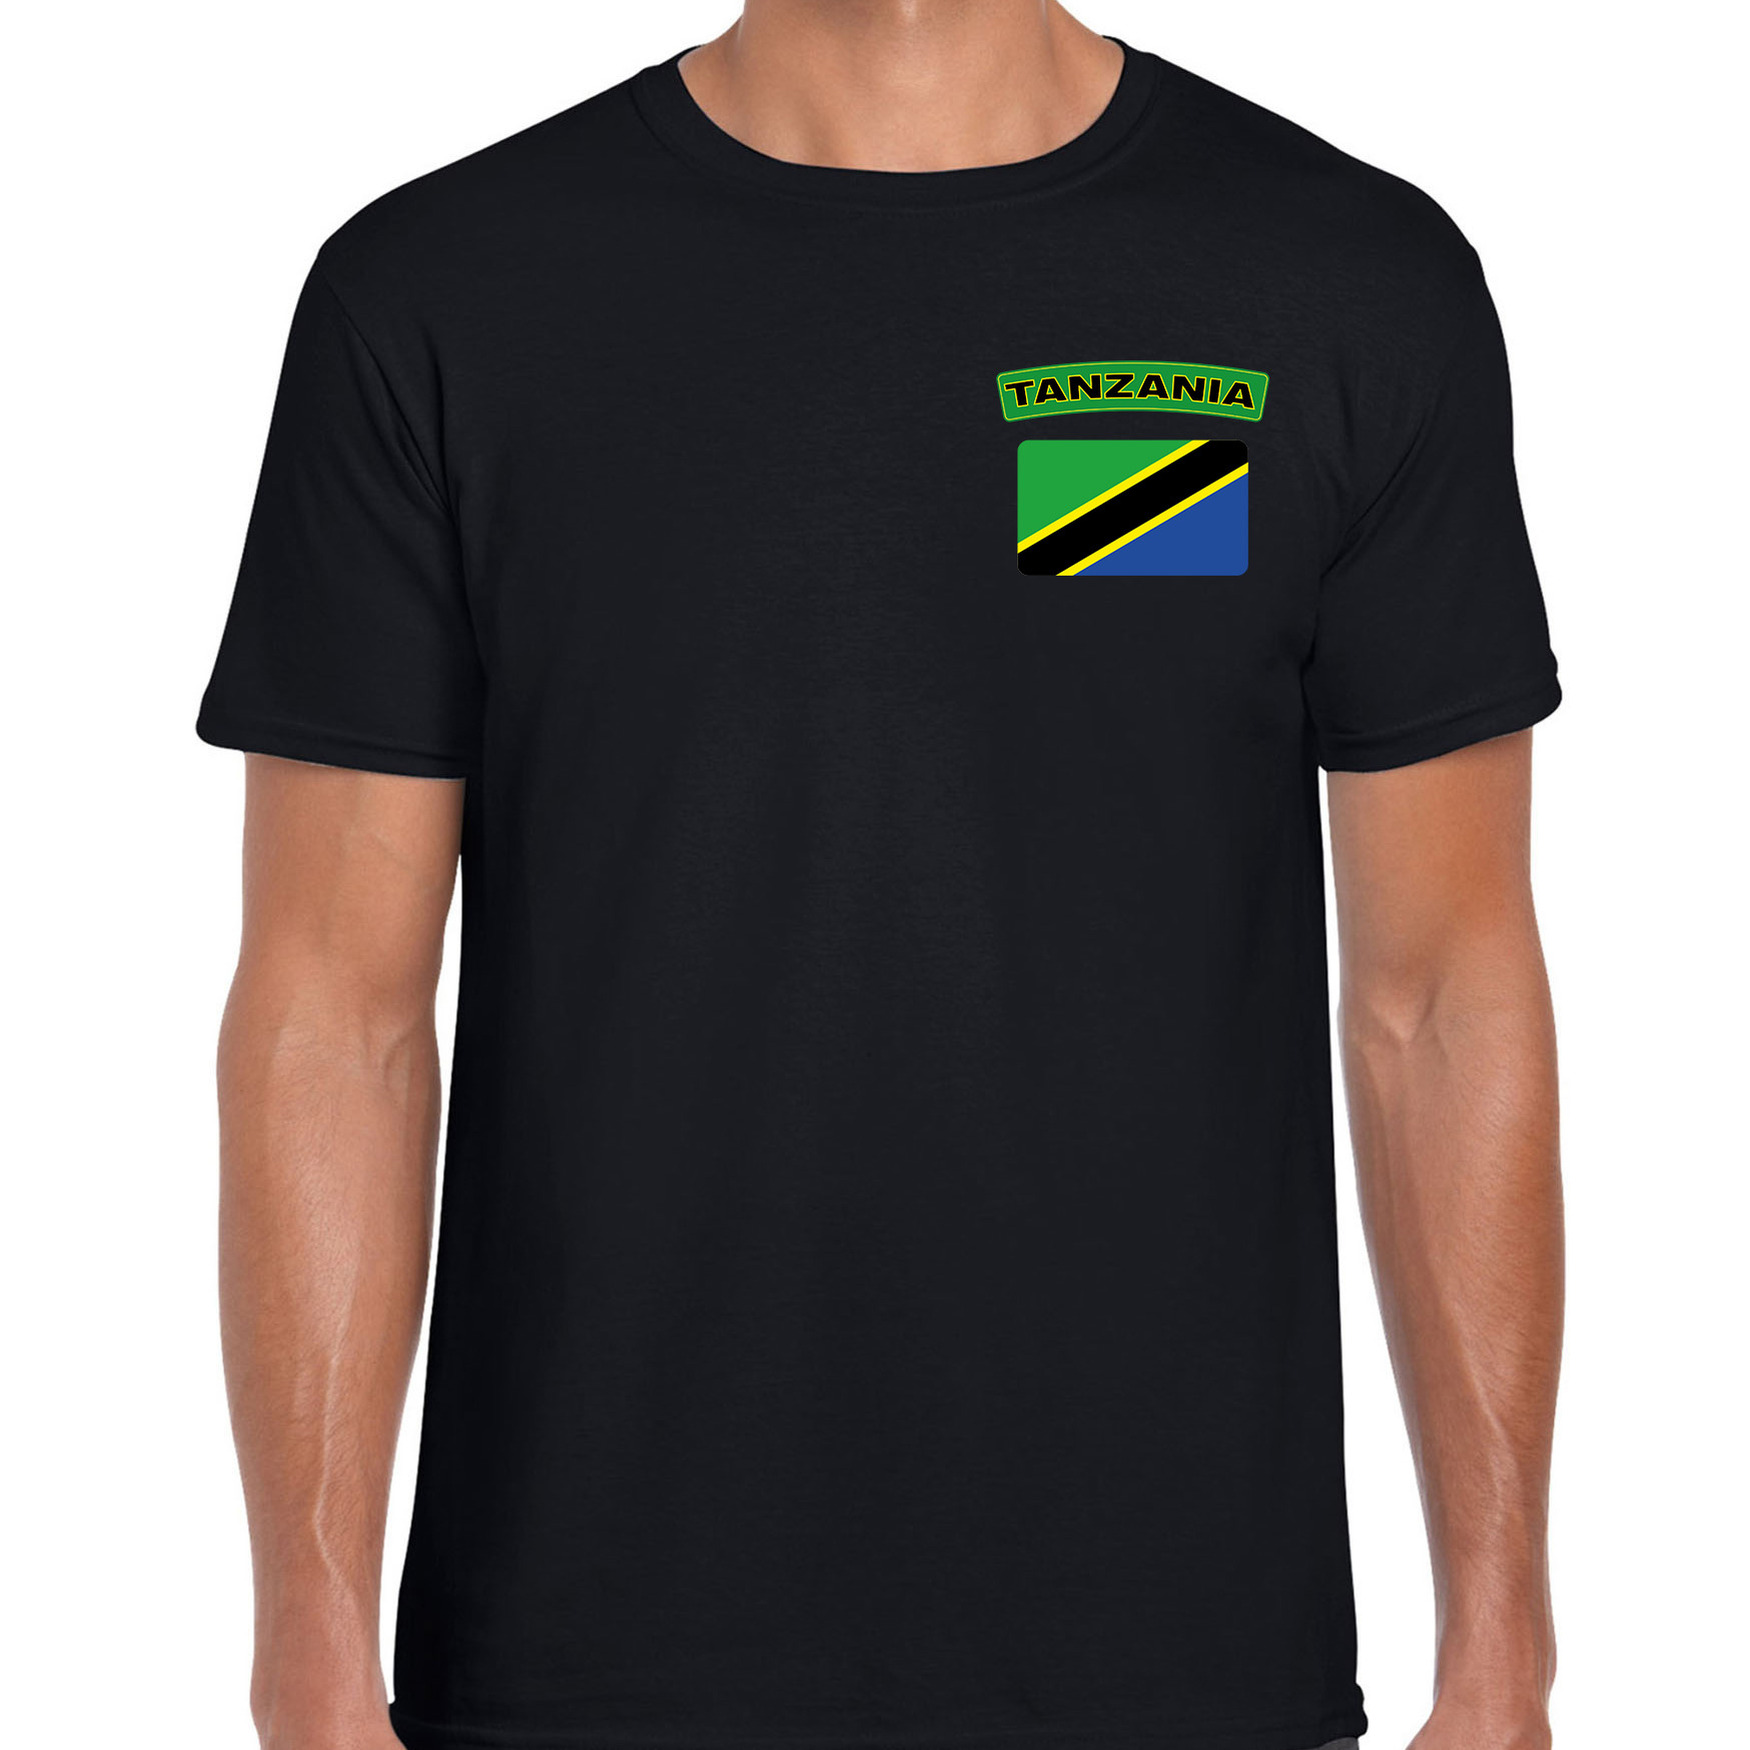 Tanzania t shirt met vlag zwart op borst voor heren